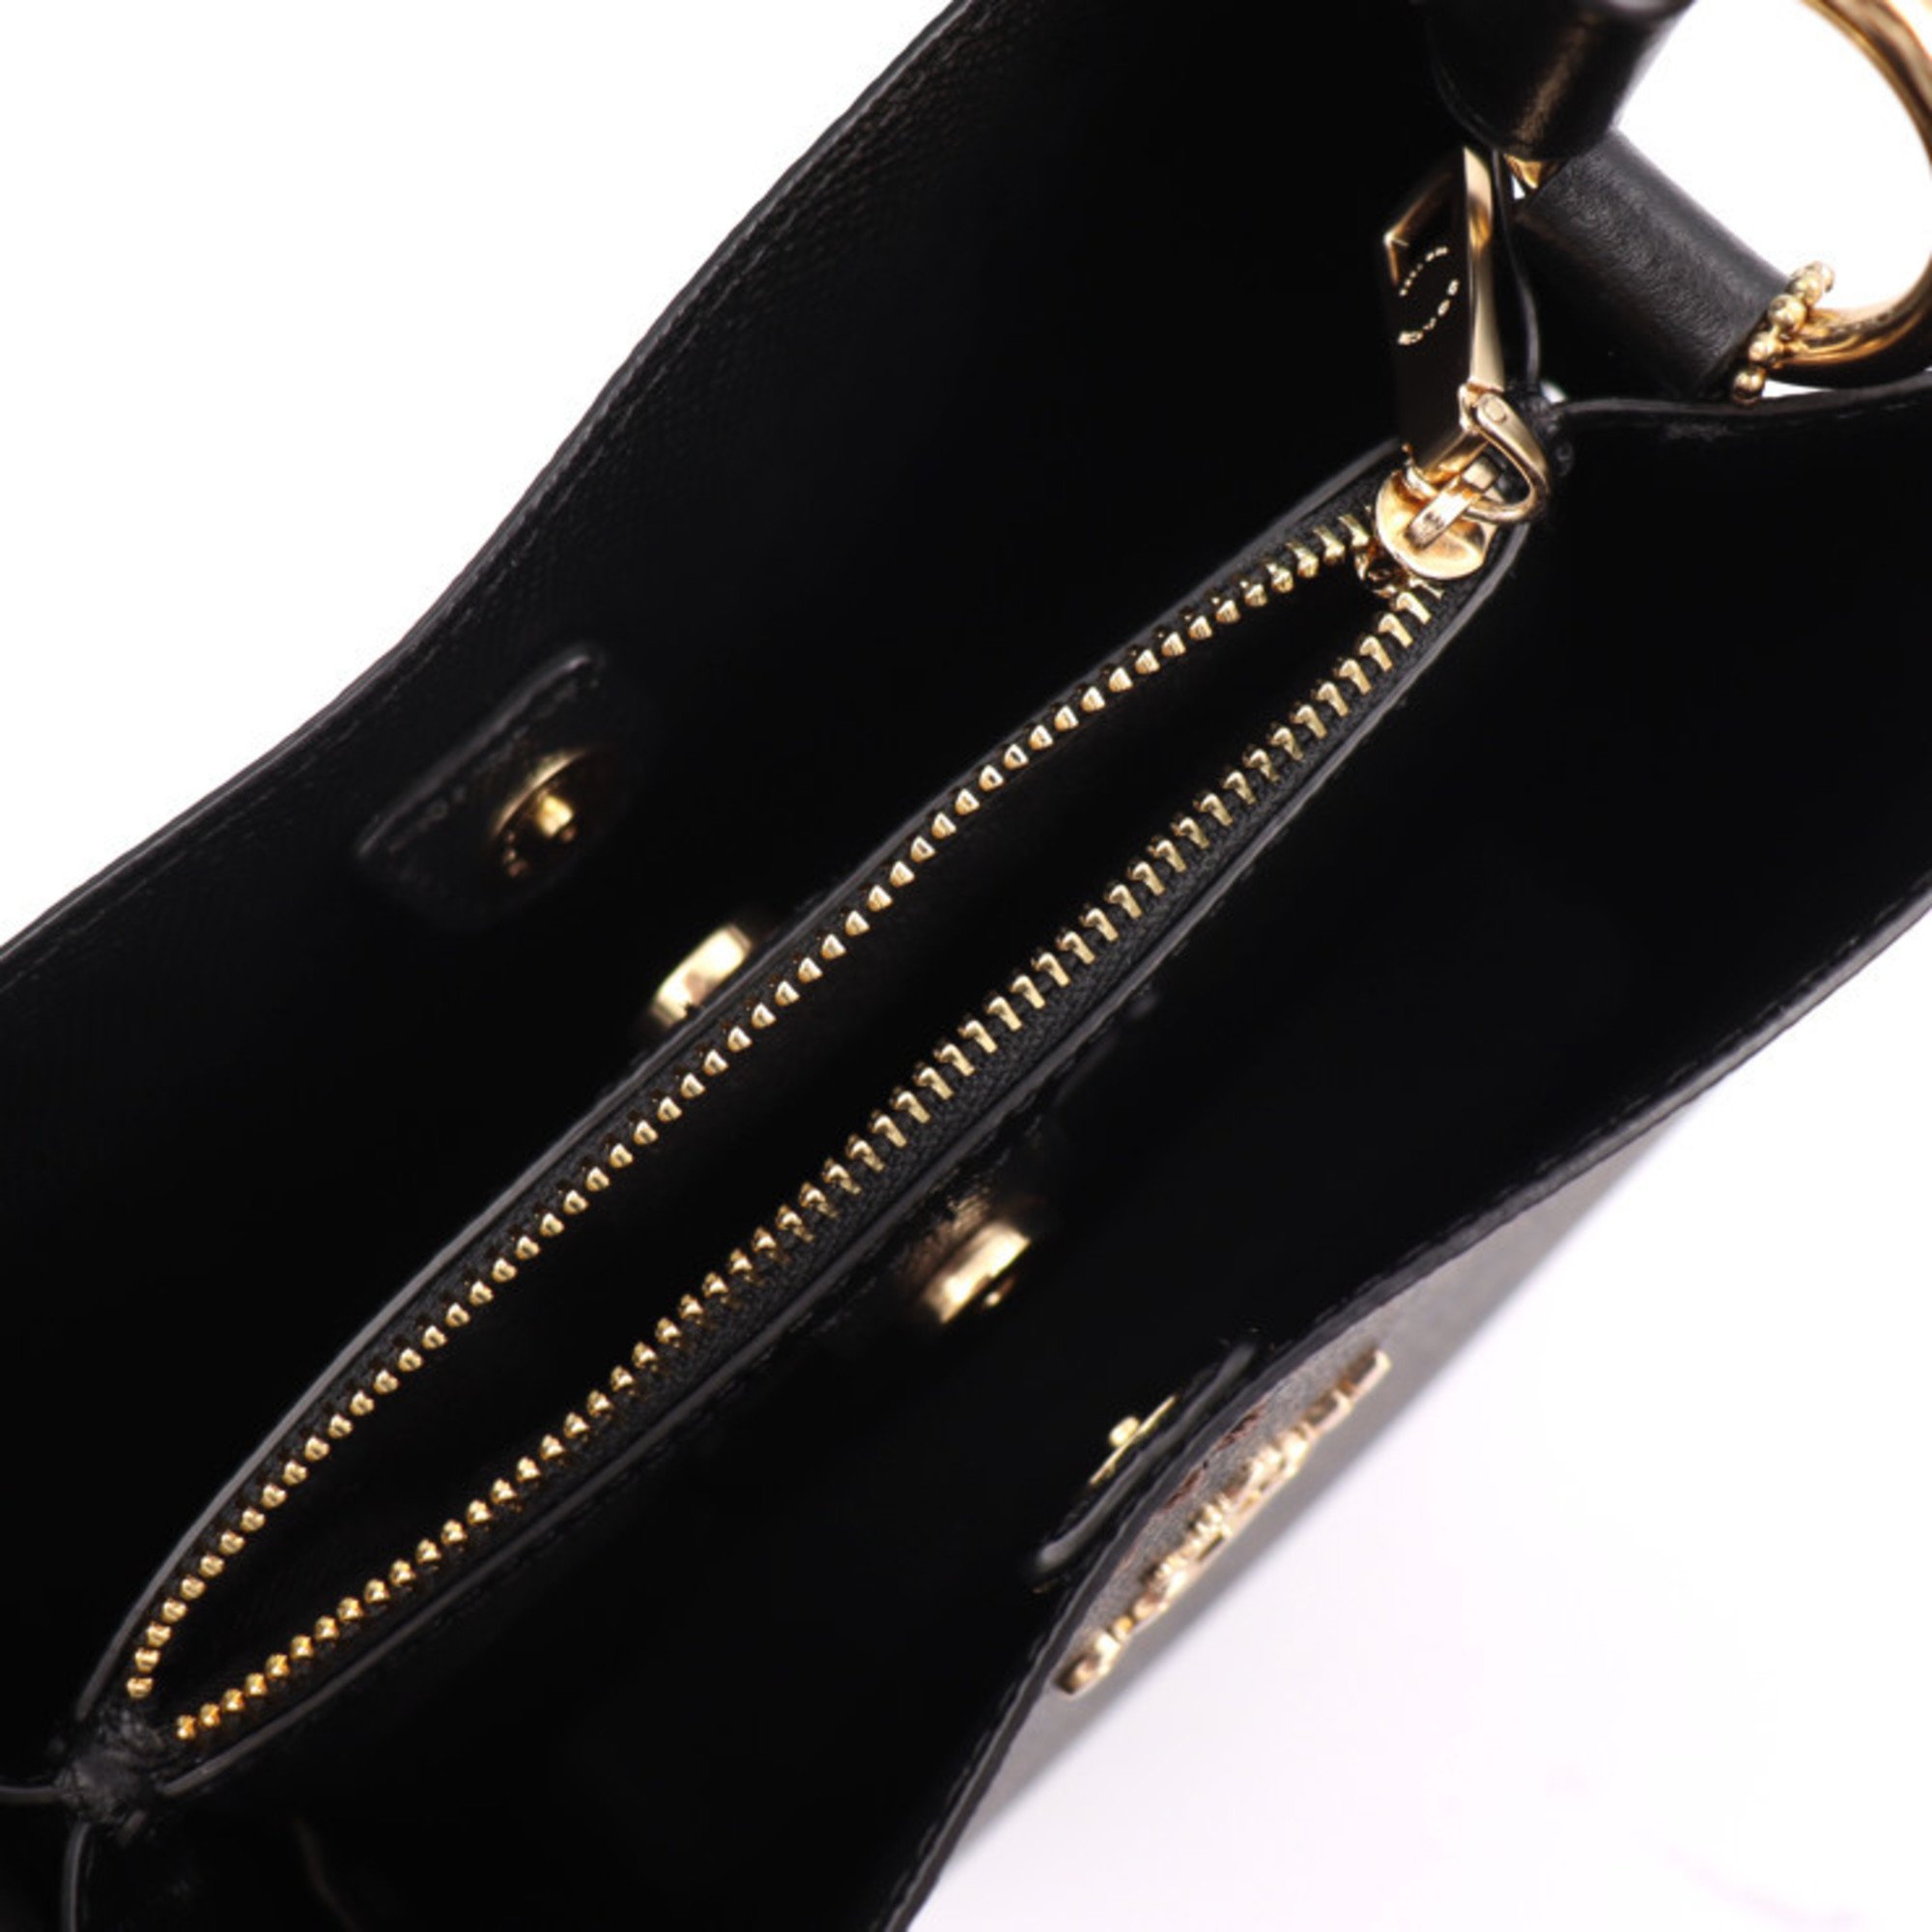 COACH Signature Handbag 2312 Leather Brown Black Shoulder Bag